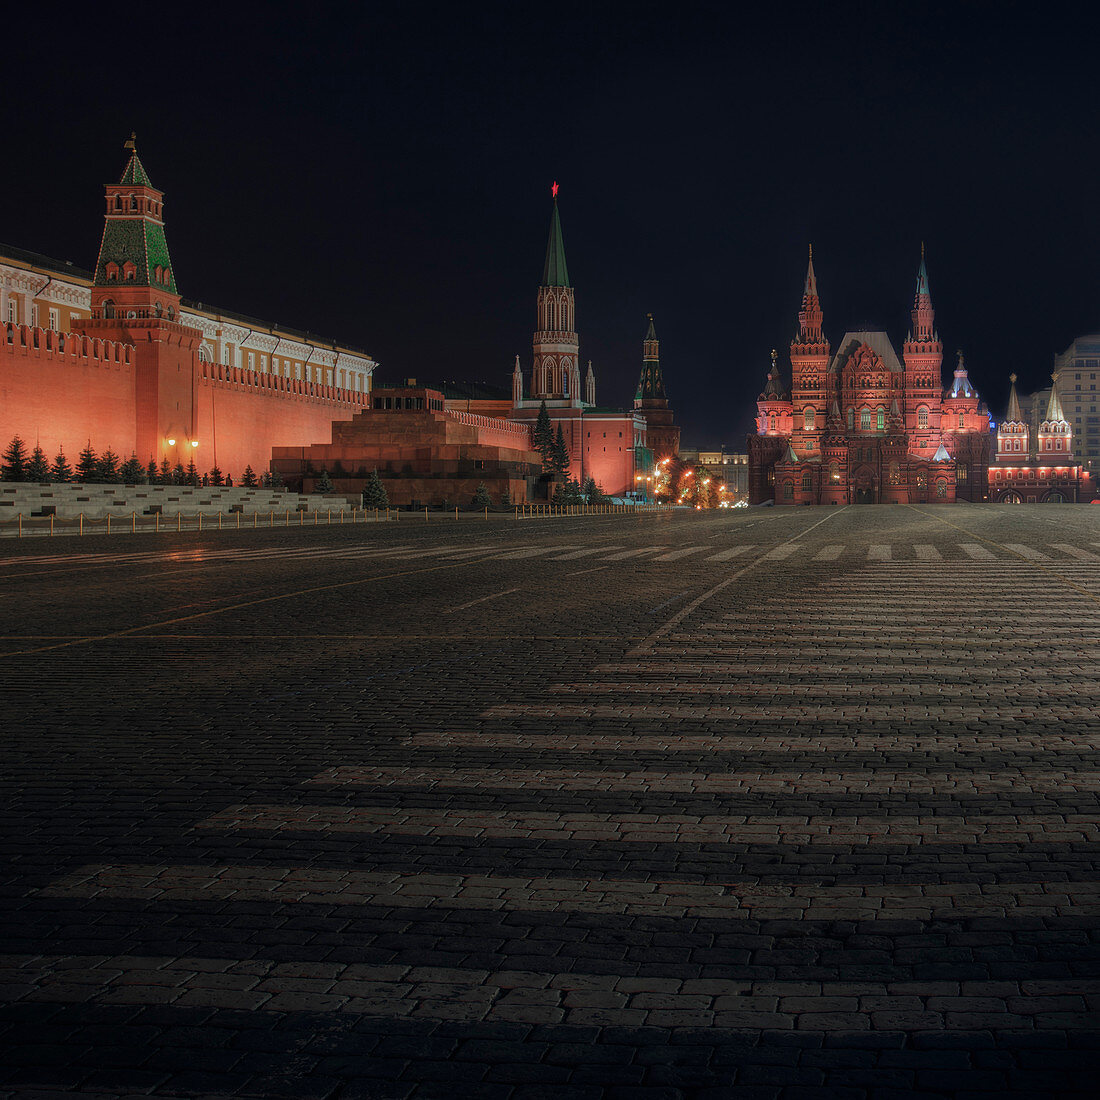 Roter Platz, Lenins Grab und Kreml, Moskau, Russland